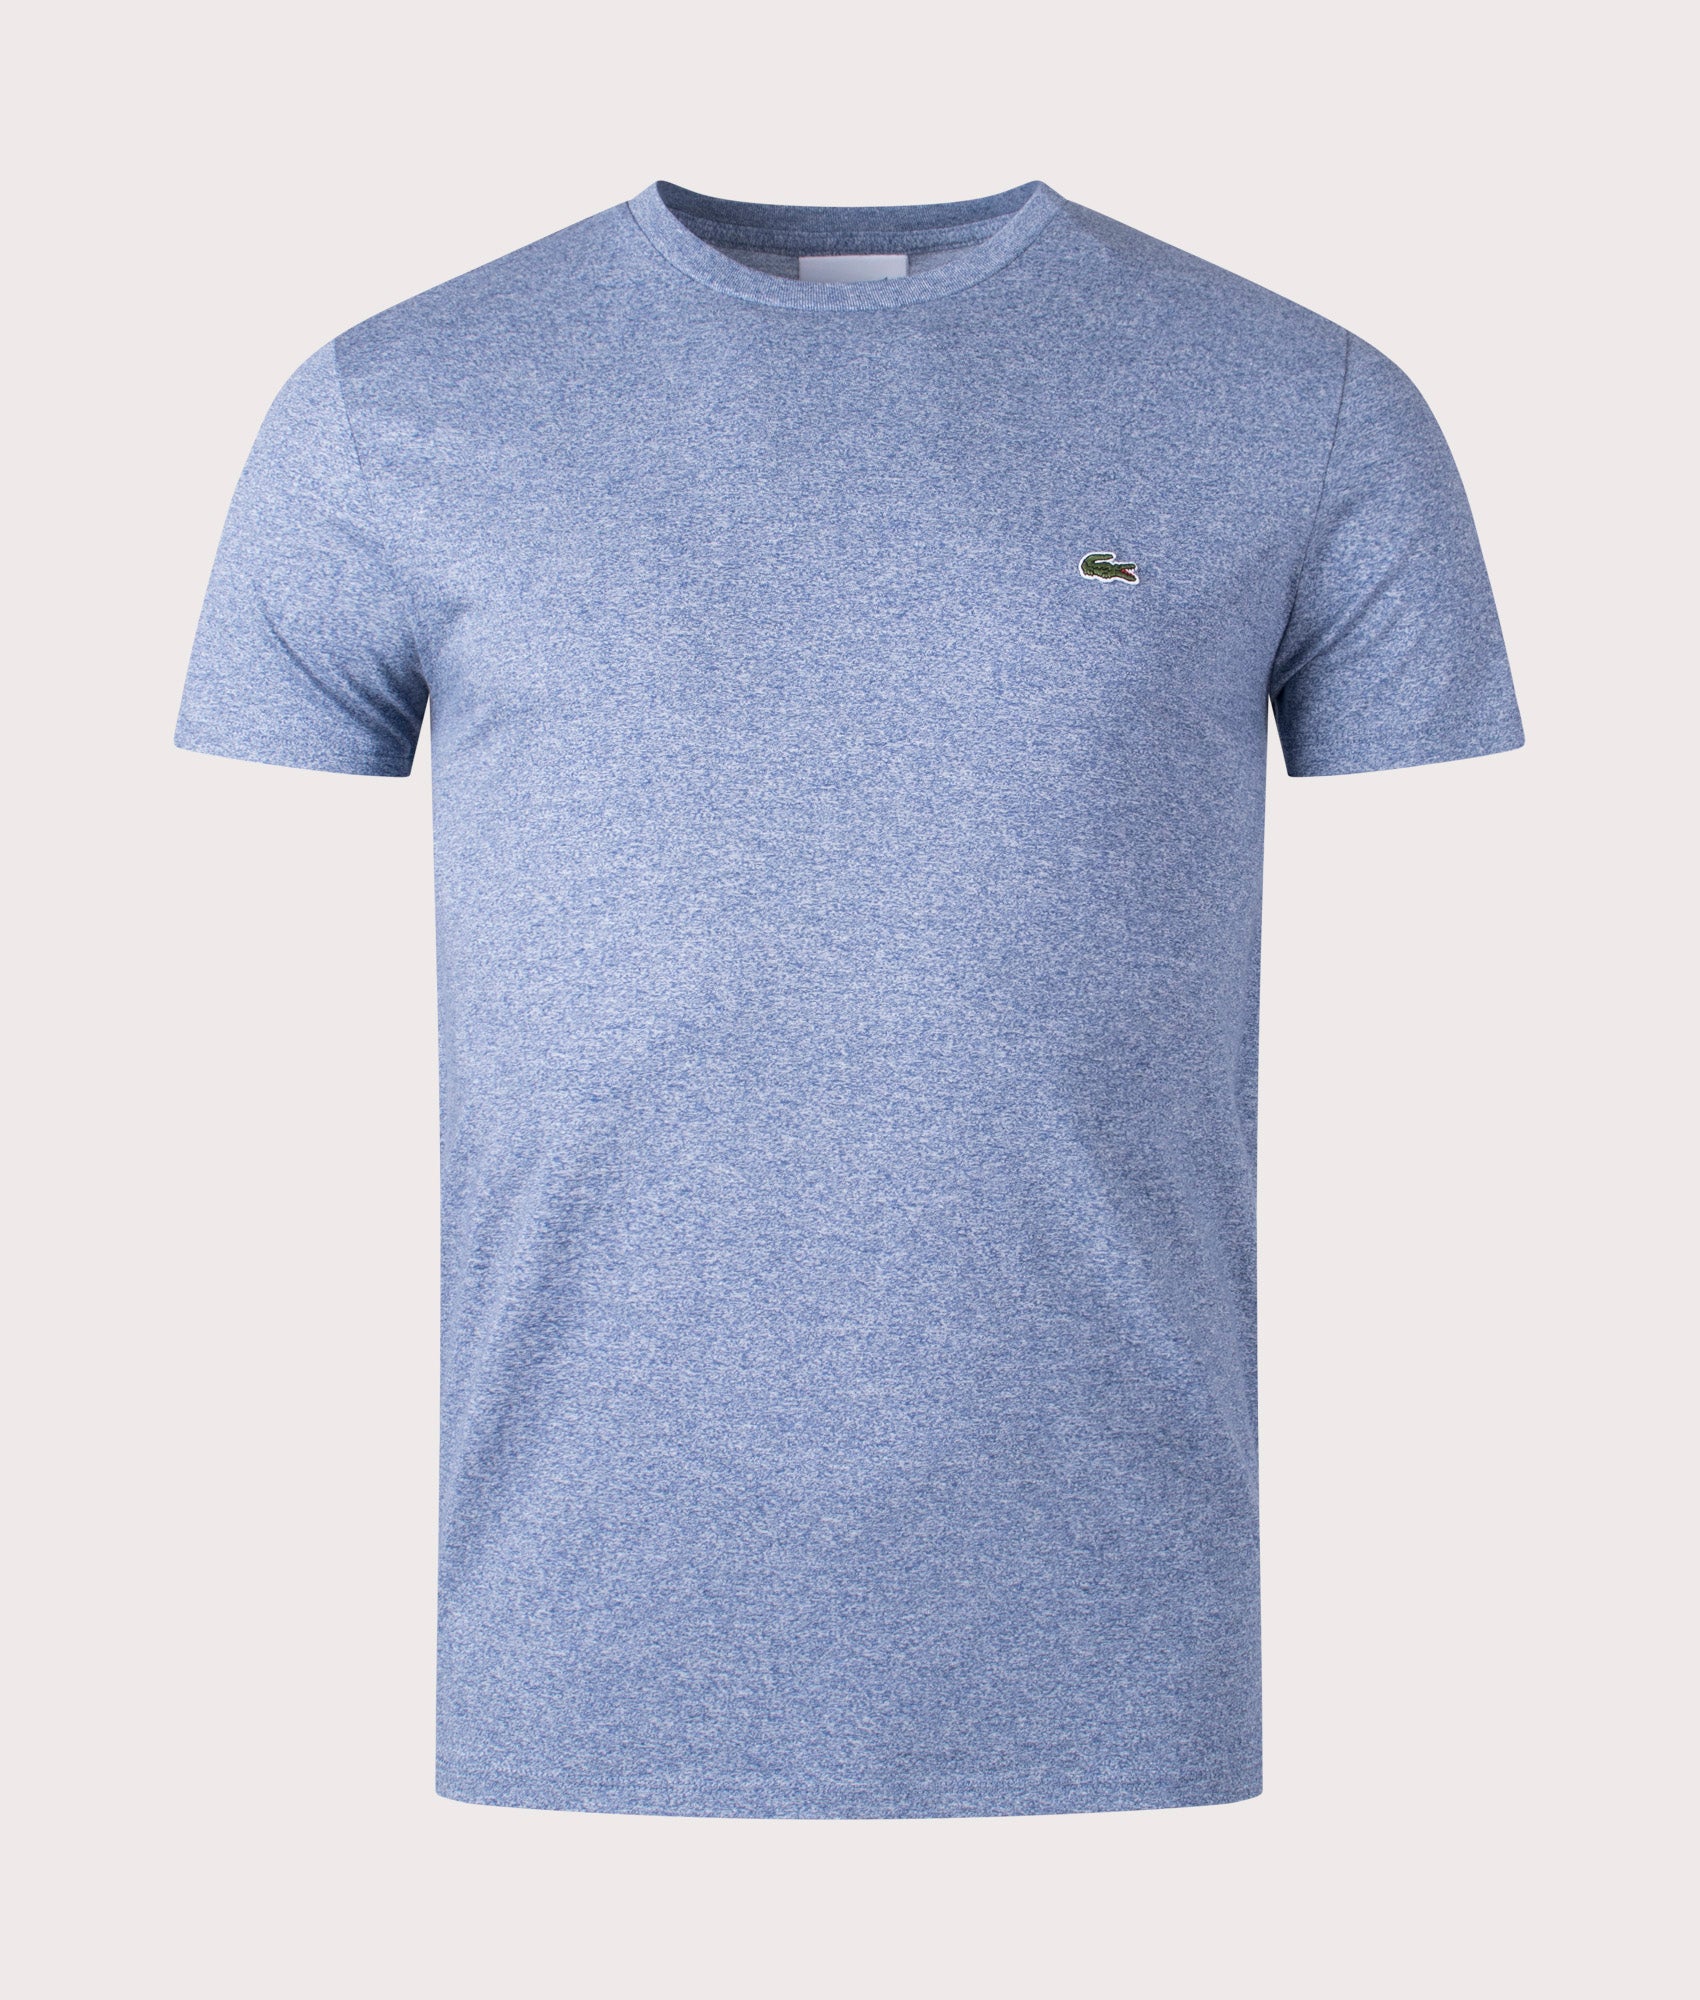 Lacoste Mens Pima Cotton Croc Logo T-Shirt - Colour: 1GF Light Indigo Blue - Size: 5/L